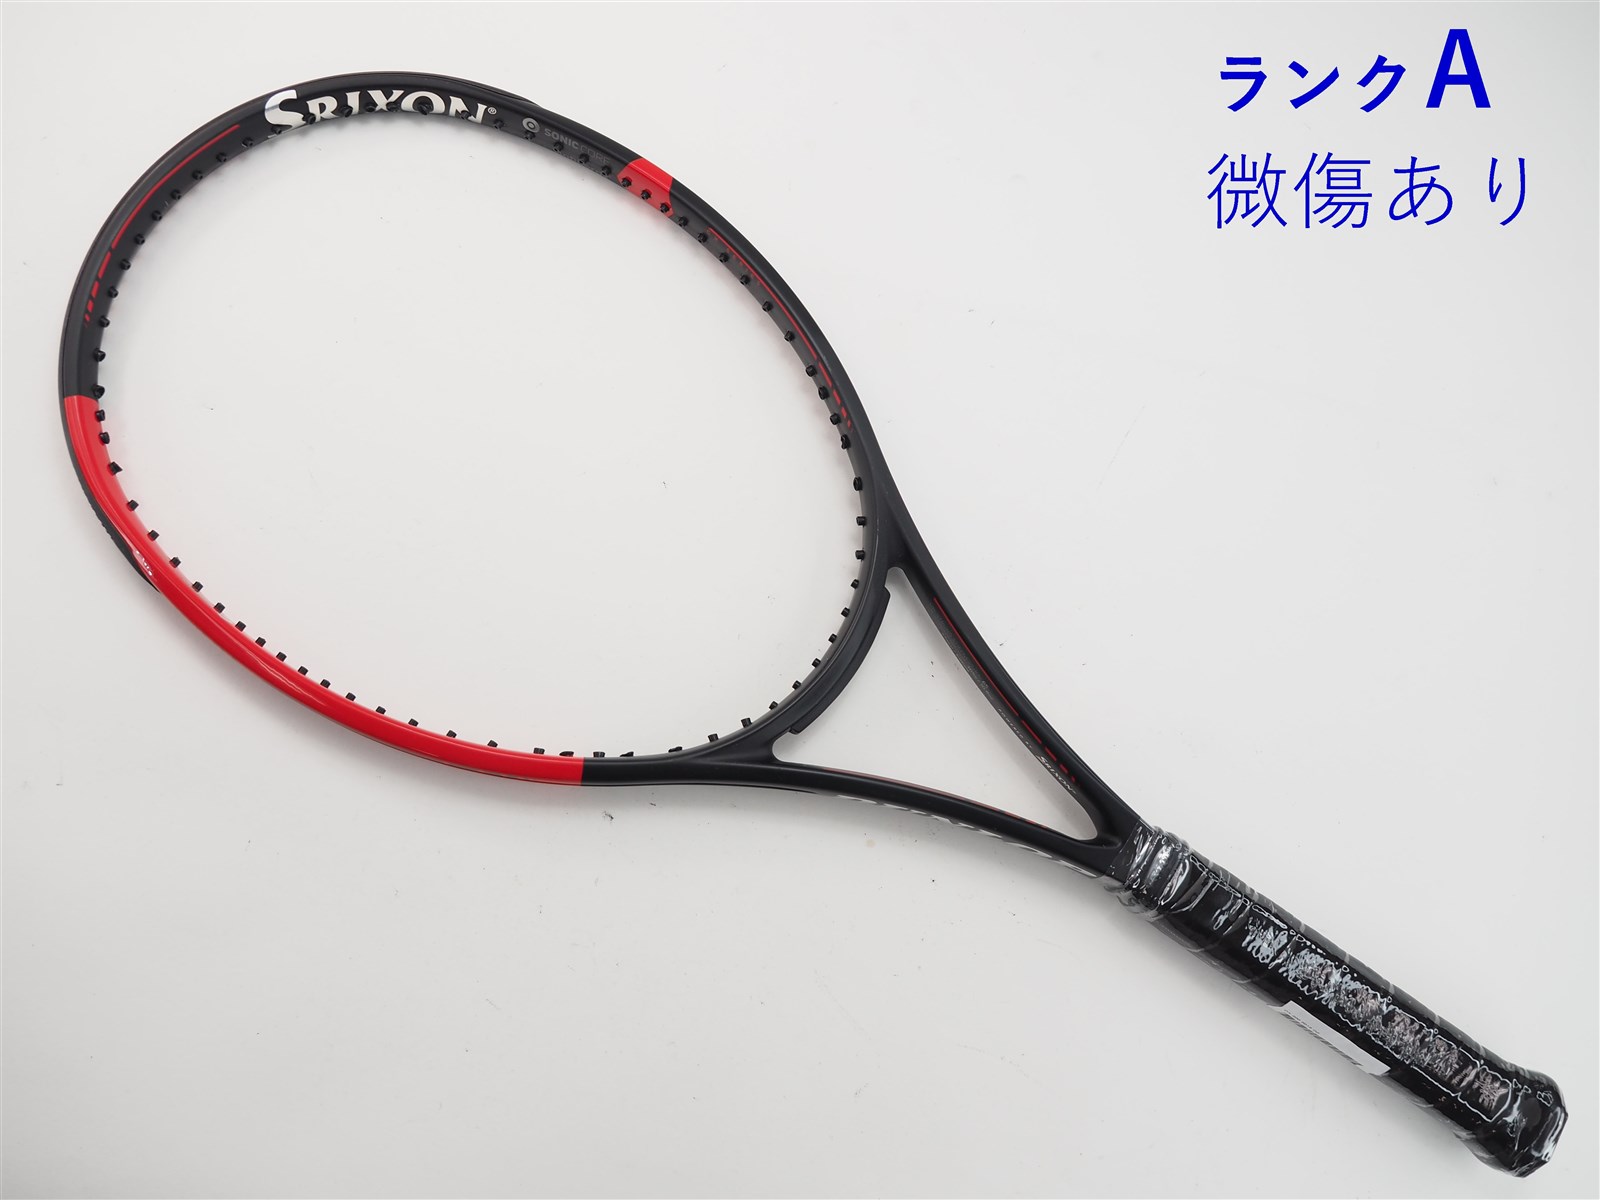 テニスラケット ダンロップ シーエックス 200 エルエス 2019年モデル